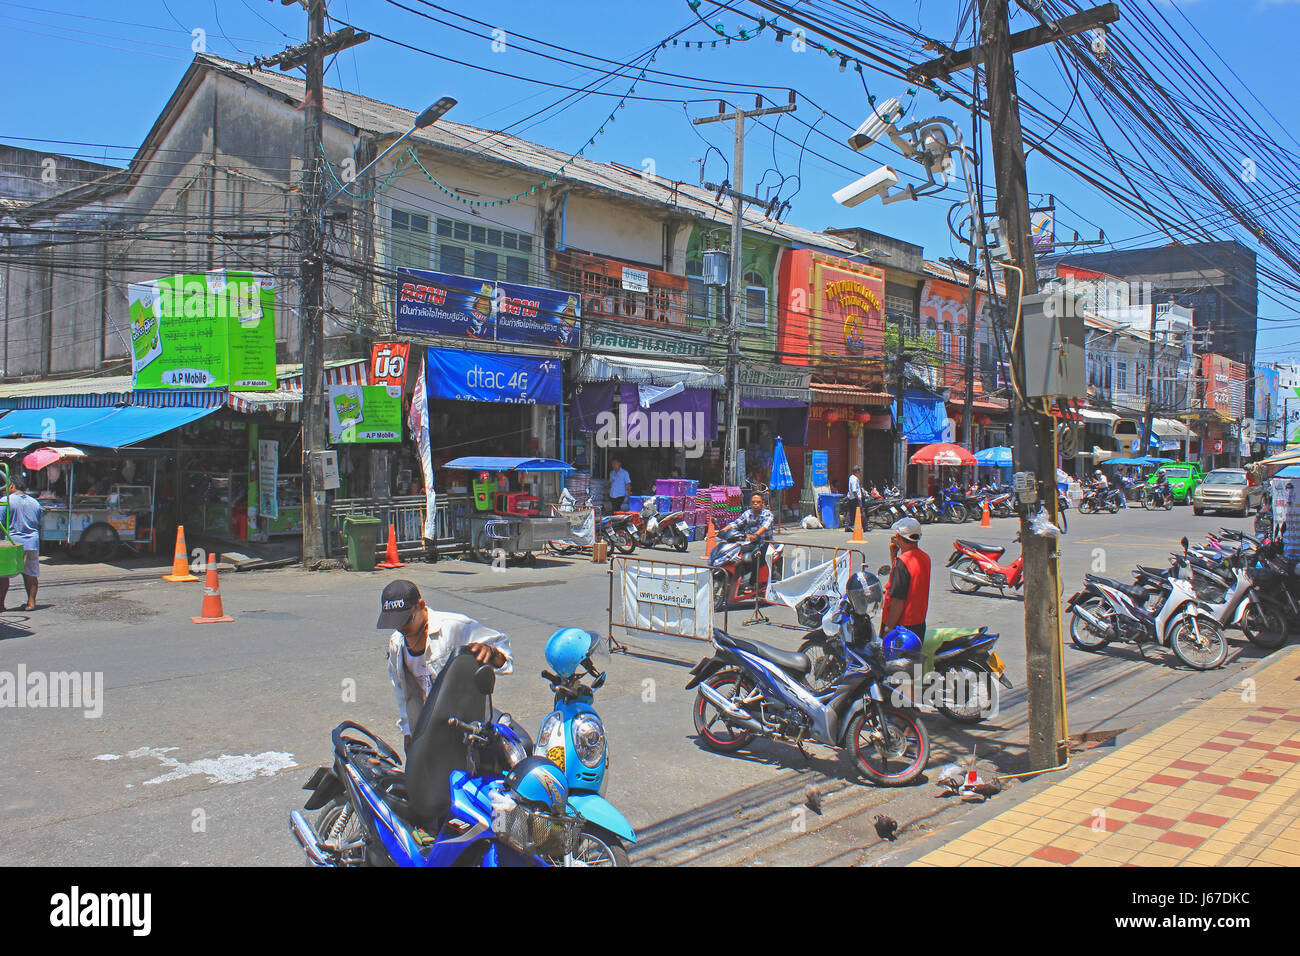 Straße in der Altstadt von Phuket mit bunten Geschäften und anzeigen, öffnen Sie elektrische Netze und Männer mit ihren Motorrädern. Stockfoto